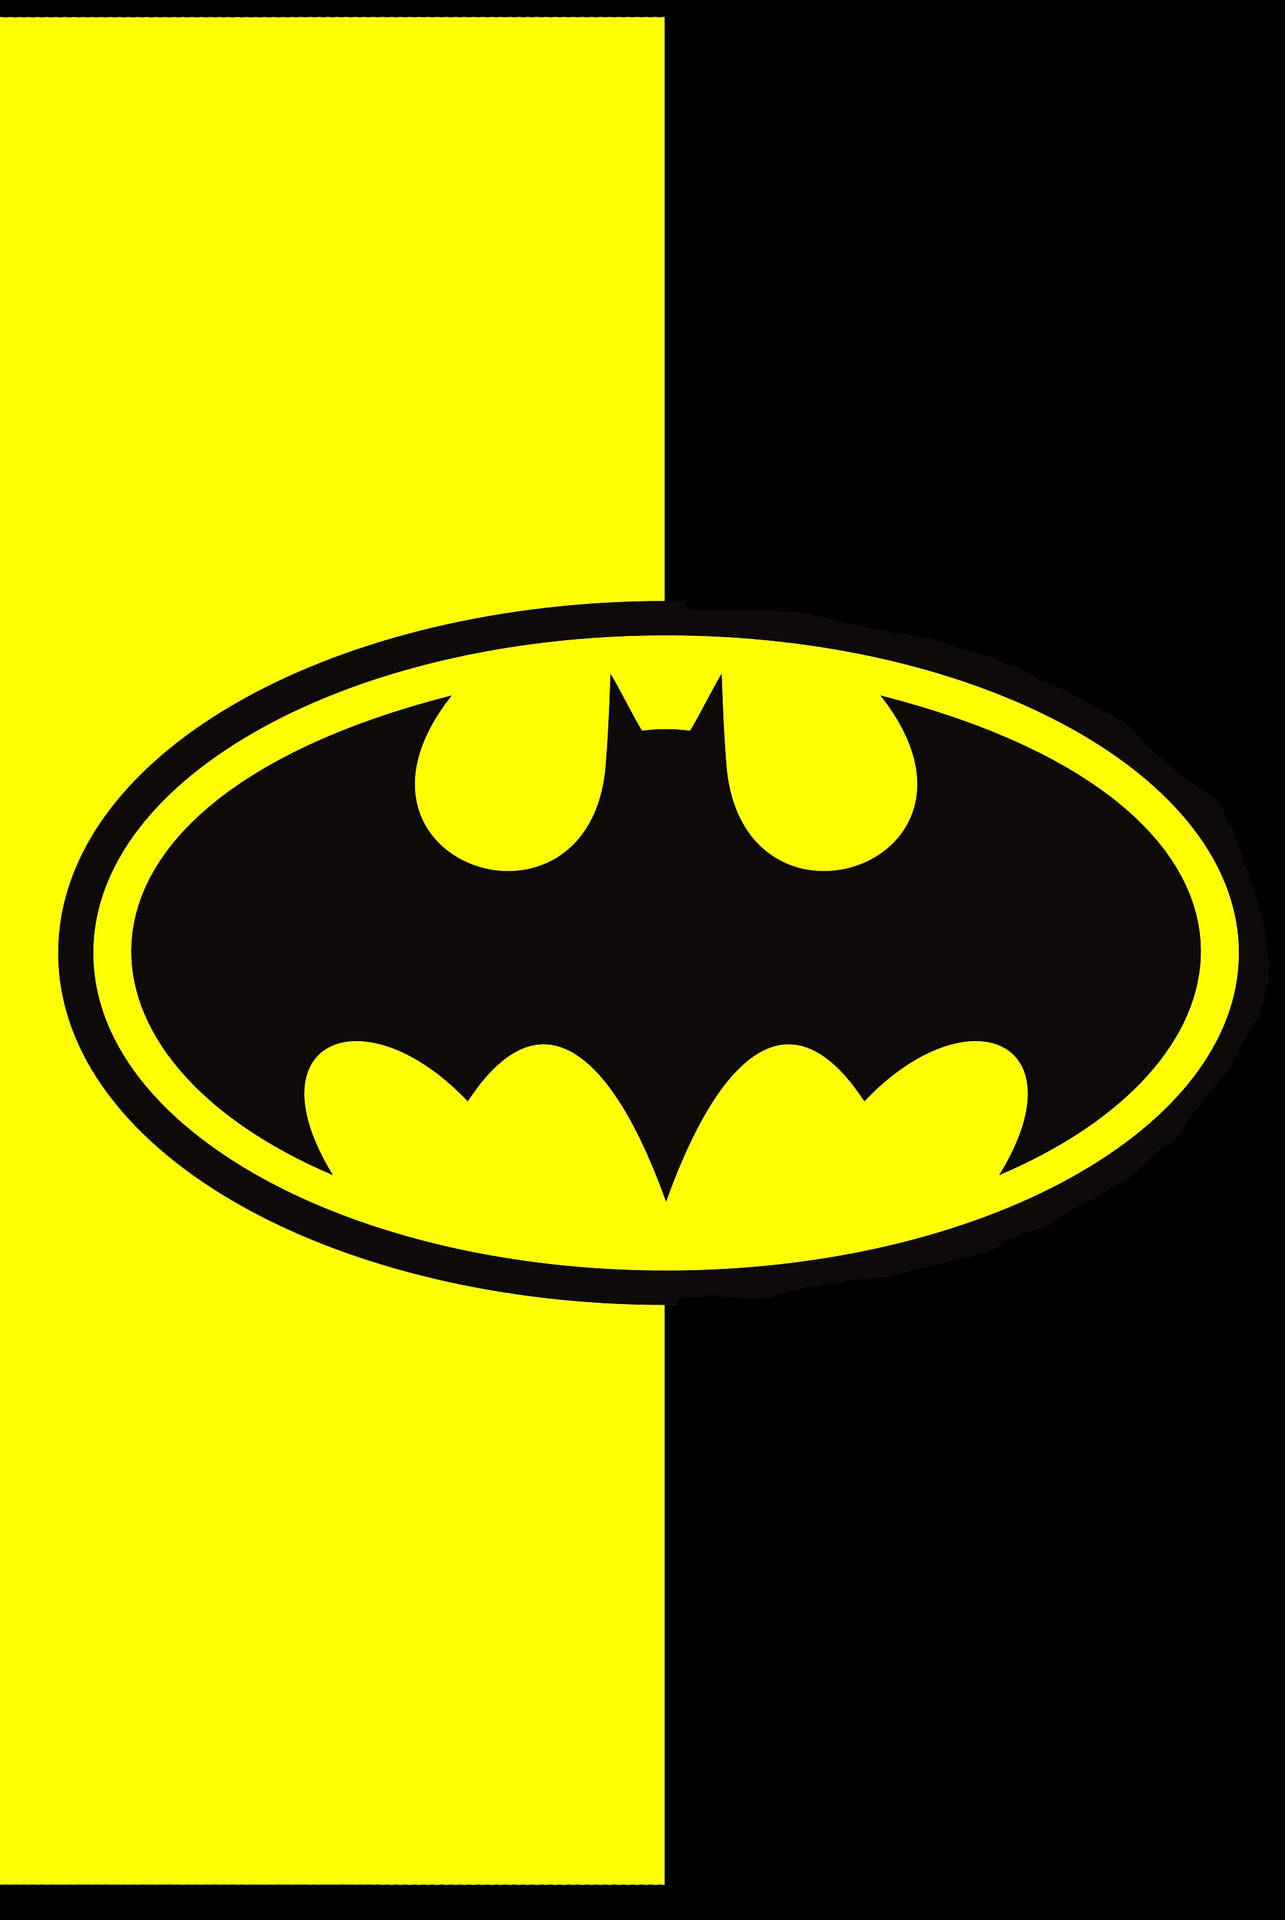 Fondode Pantalla Para Iphone Con El Logo De Batman En Negro Y Amarillo. Fondo de pantalla